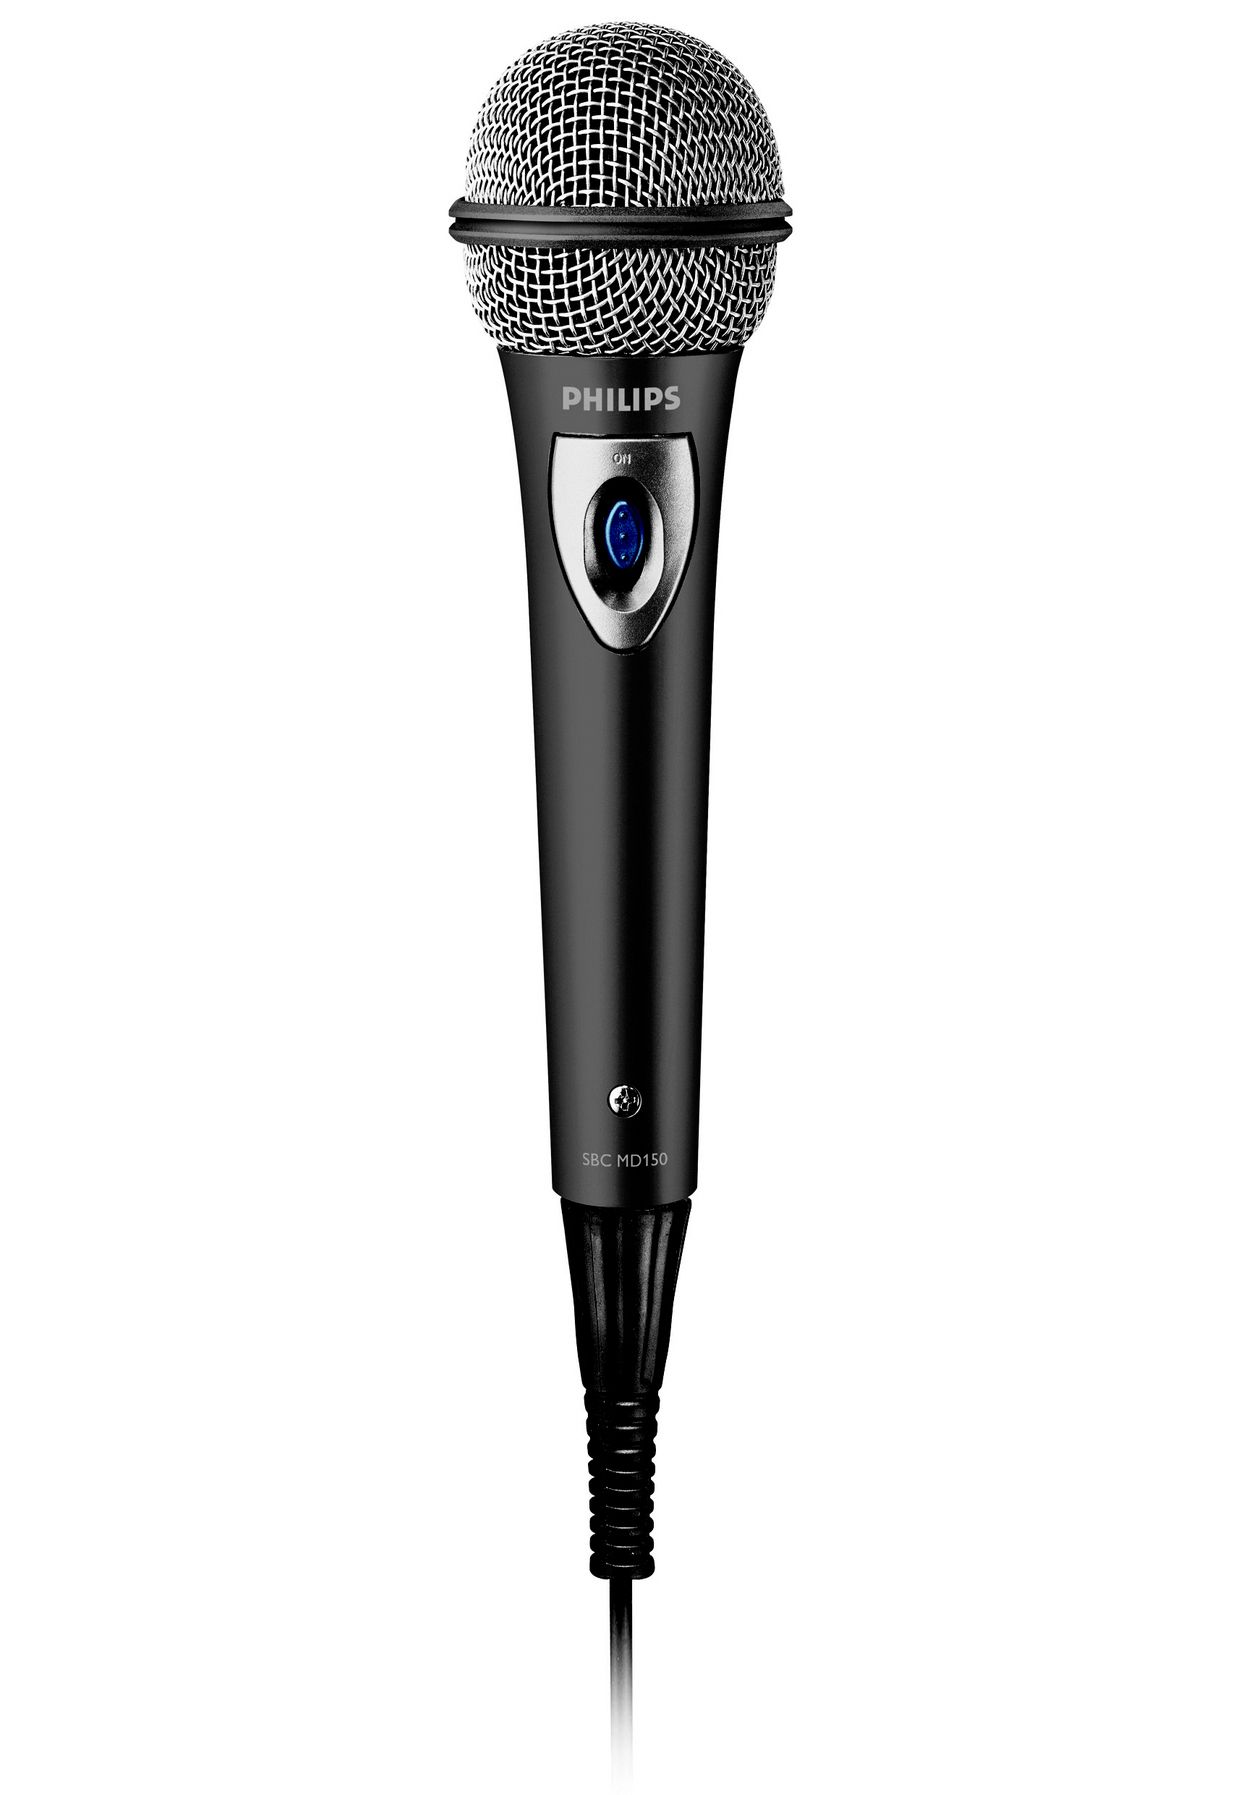 Черный микрофон купить. Микрофон для караоке Philips SBC MD 150. Микрофон SBC md150. Микрофон Филипс SBC md150. Микрофон проводной Philips SBC md150/00.